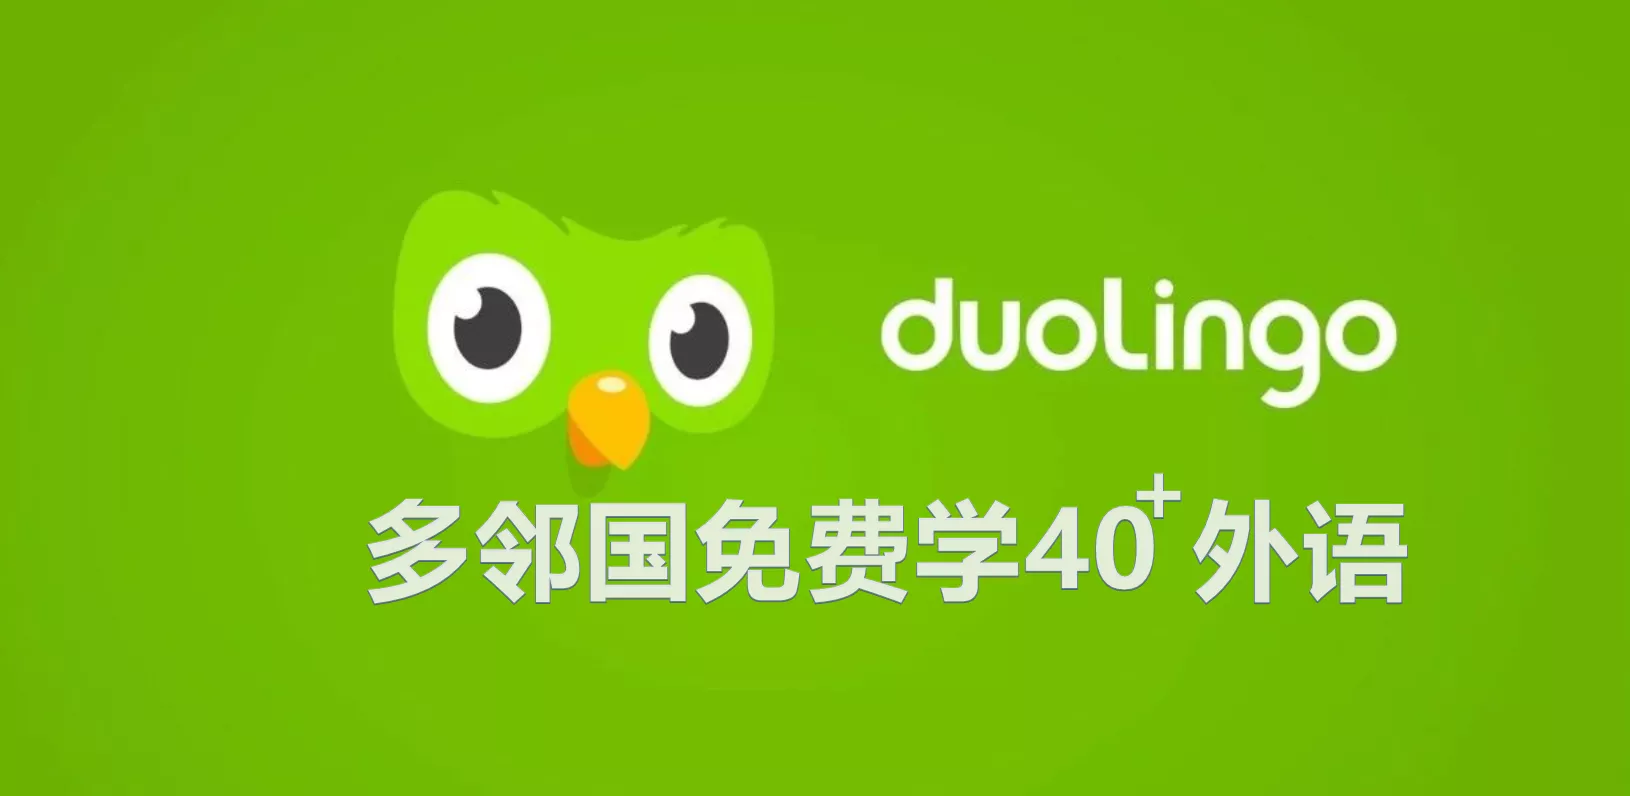 多邻国Duolingov5.140.2 (Premium)解锁版-OMii 